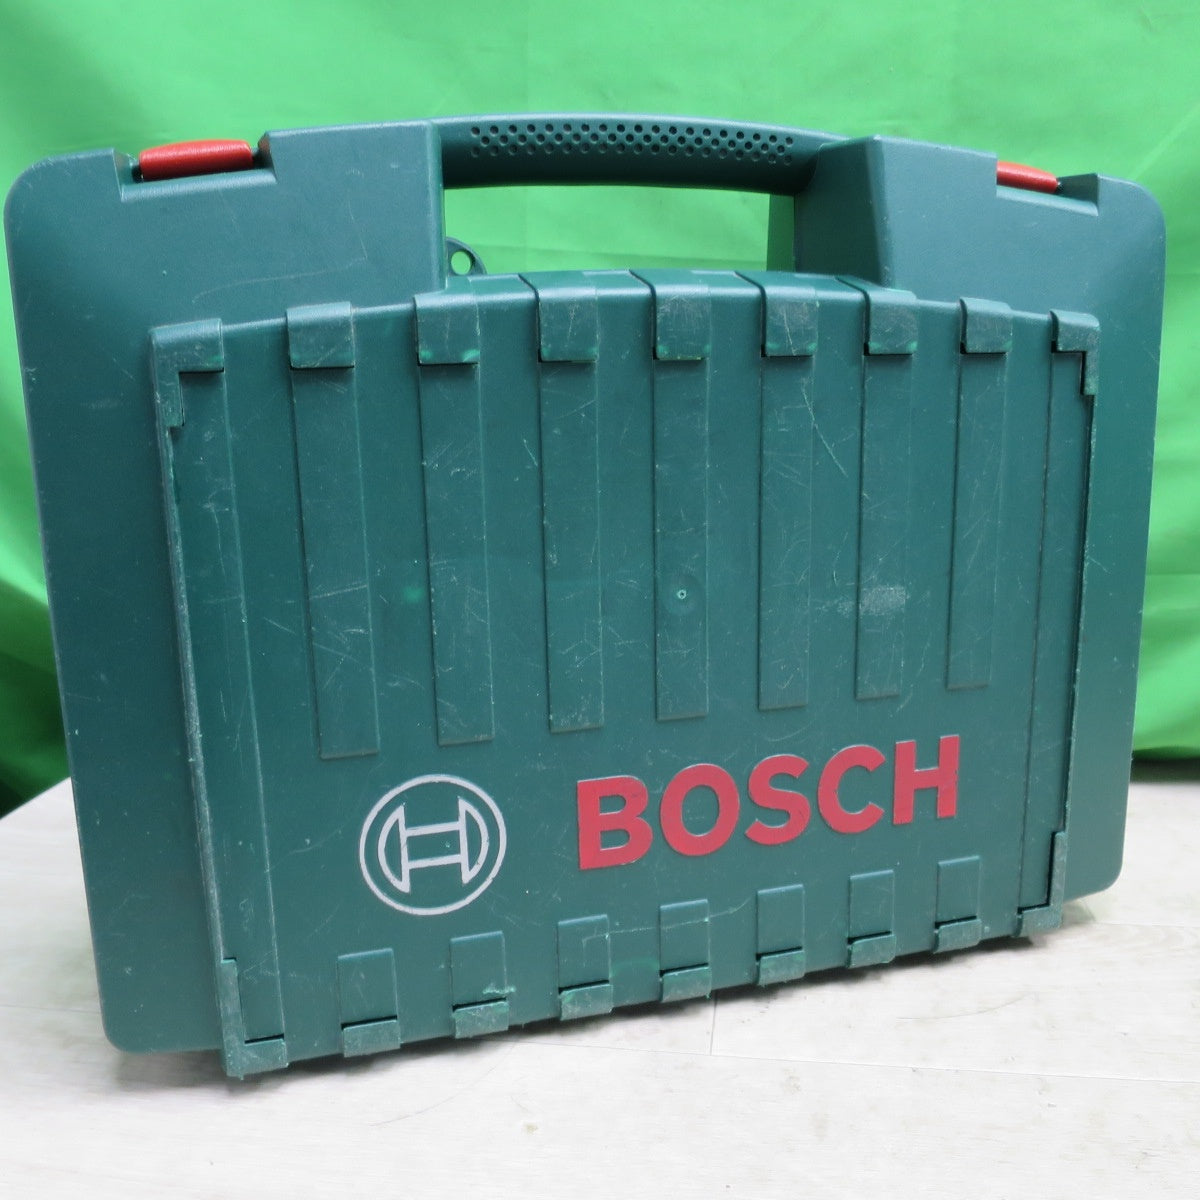 [送料無料] バッテリー2個付☆BOSCH 充電式 インパクトドライバー PDR14.4V/N 充電器 AL1450DV 電動 工具 ボッシュ☆